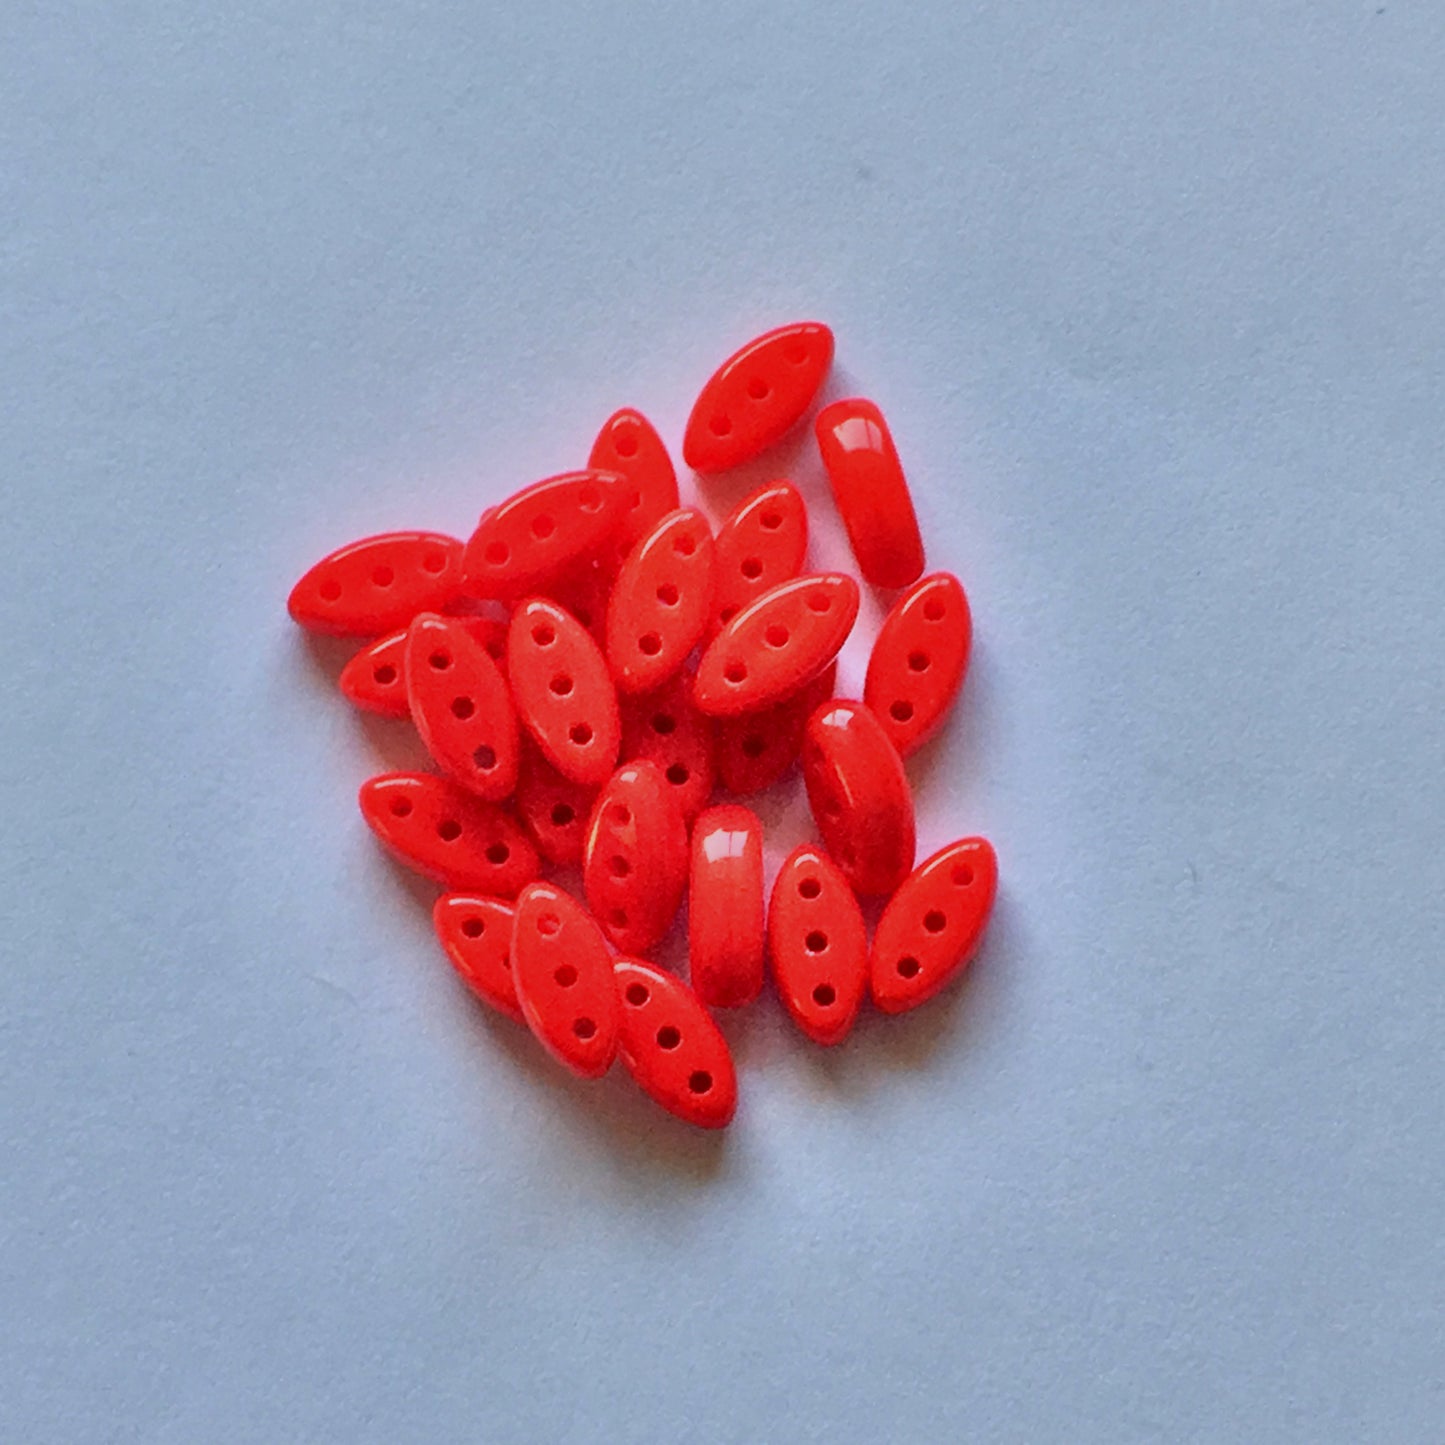 Czech Cali 3 x 8 mm 93190 Opaque Red Beads - 25 Beads